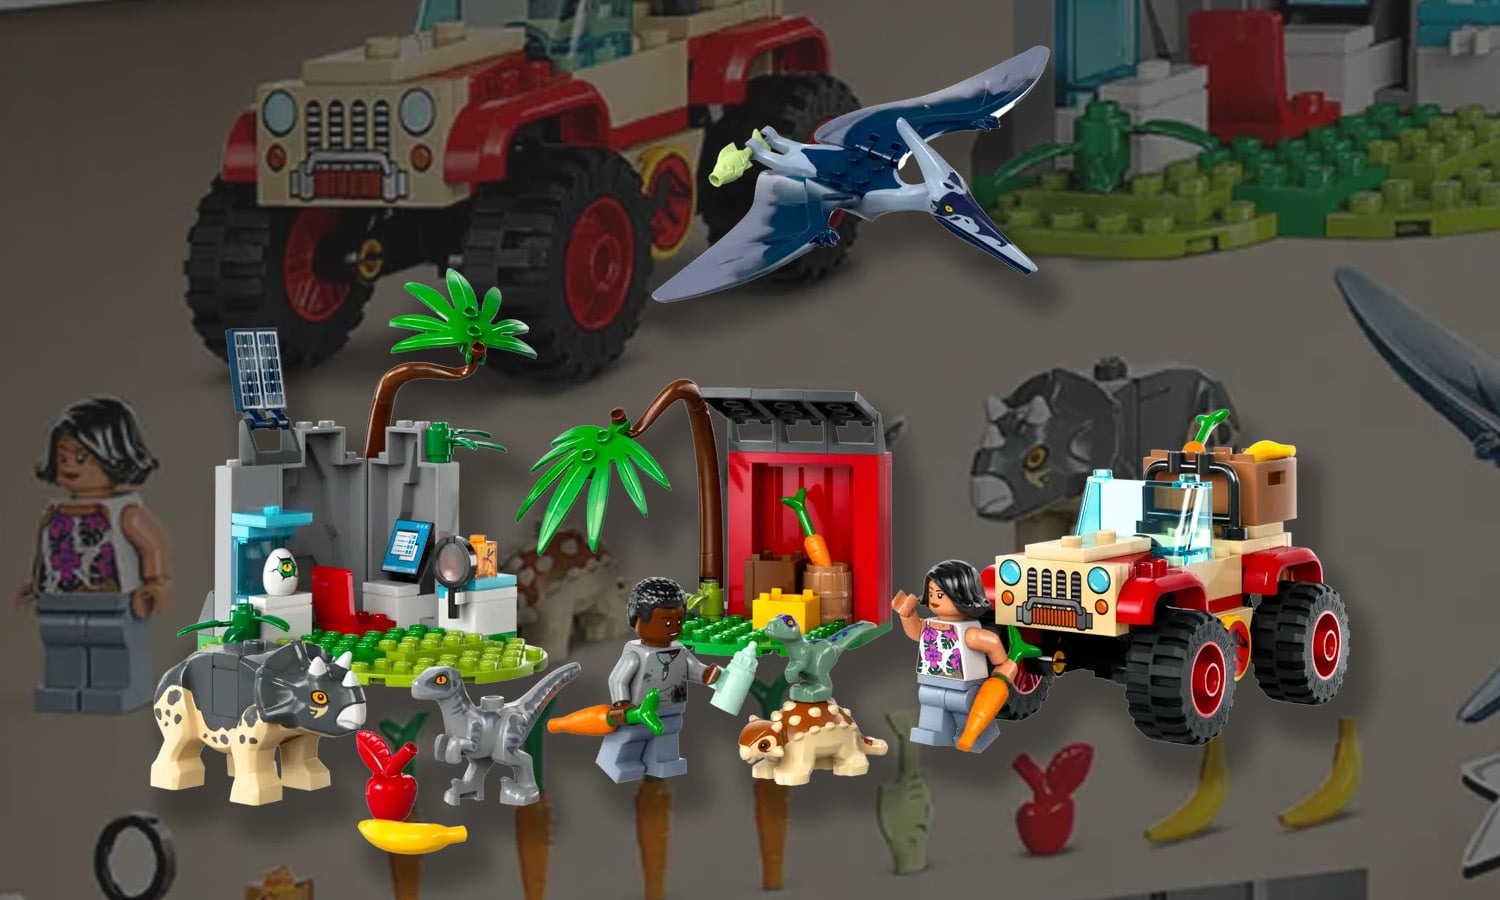 LEGO Jurassic World Centre de sauvetage des bébés dinosaures